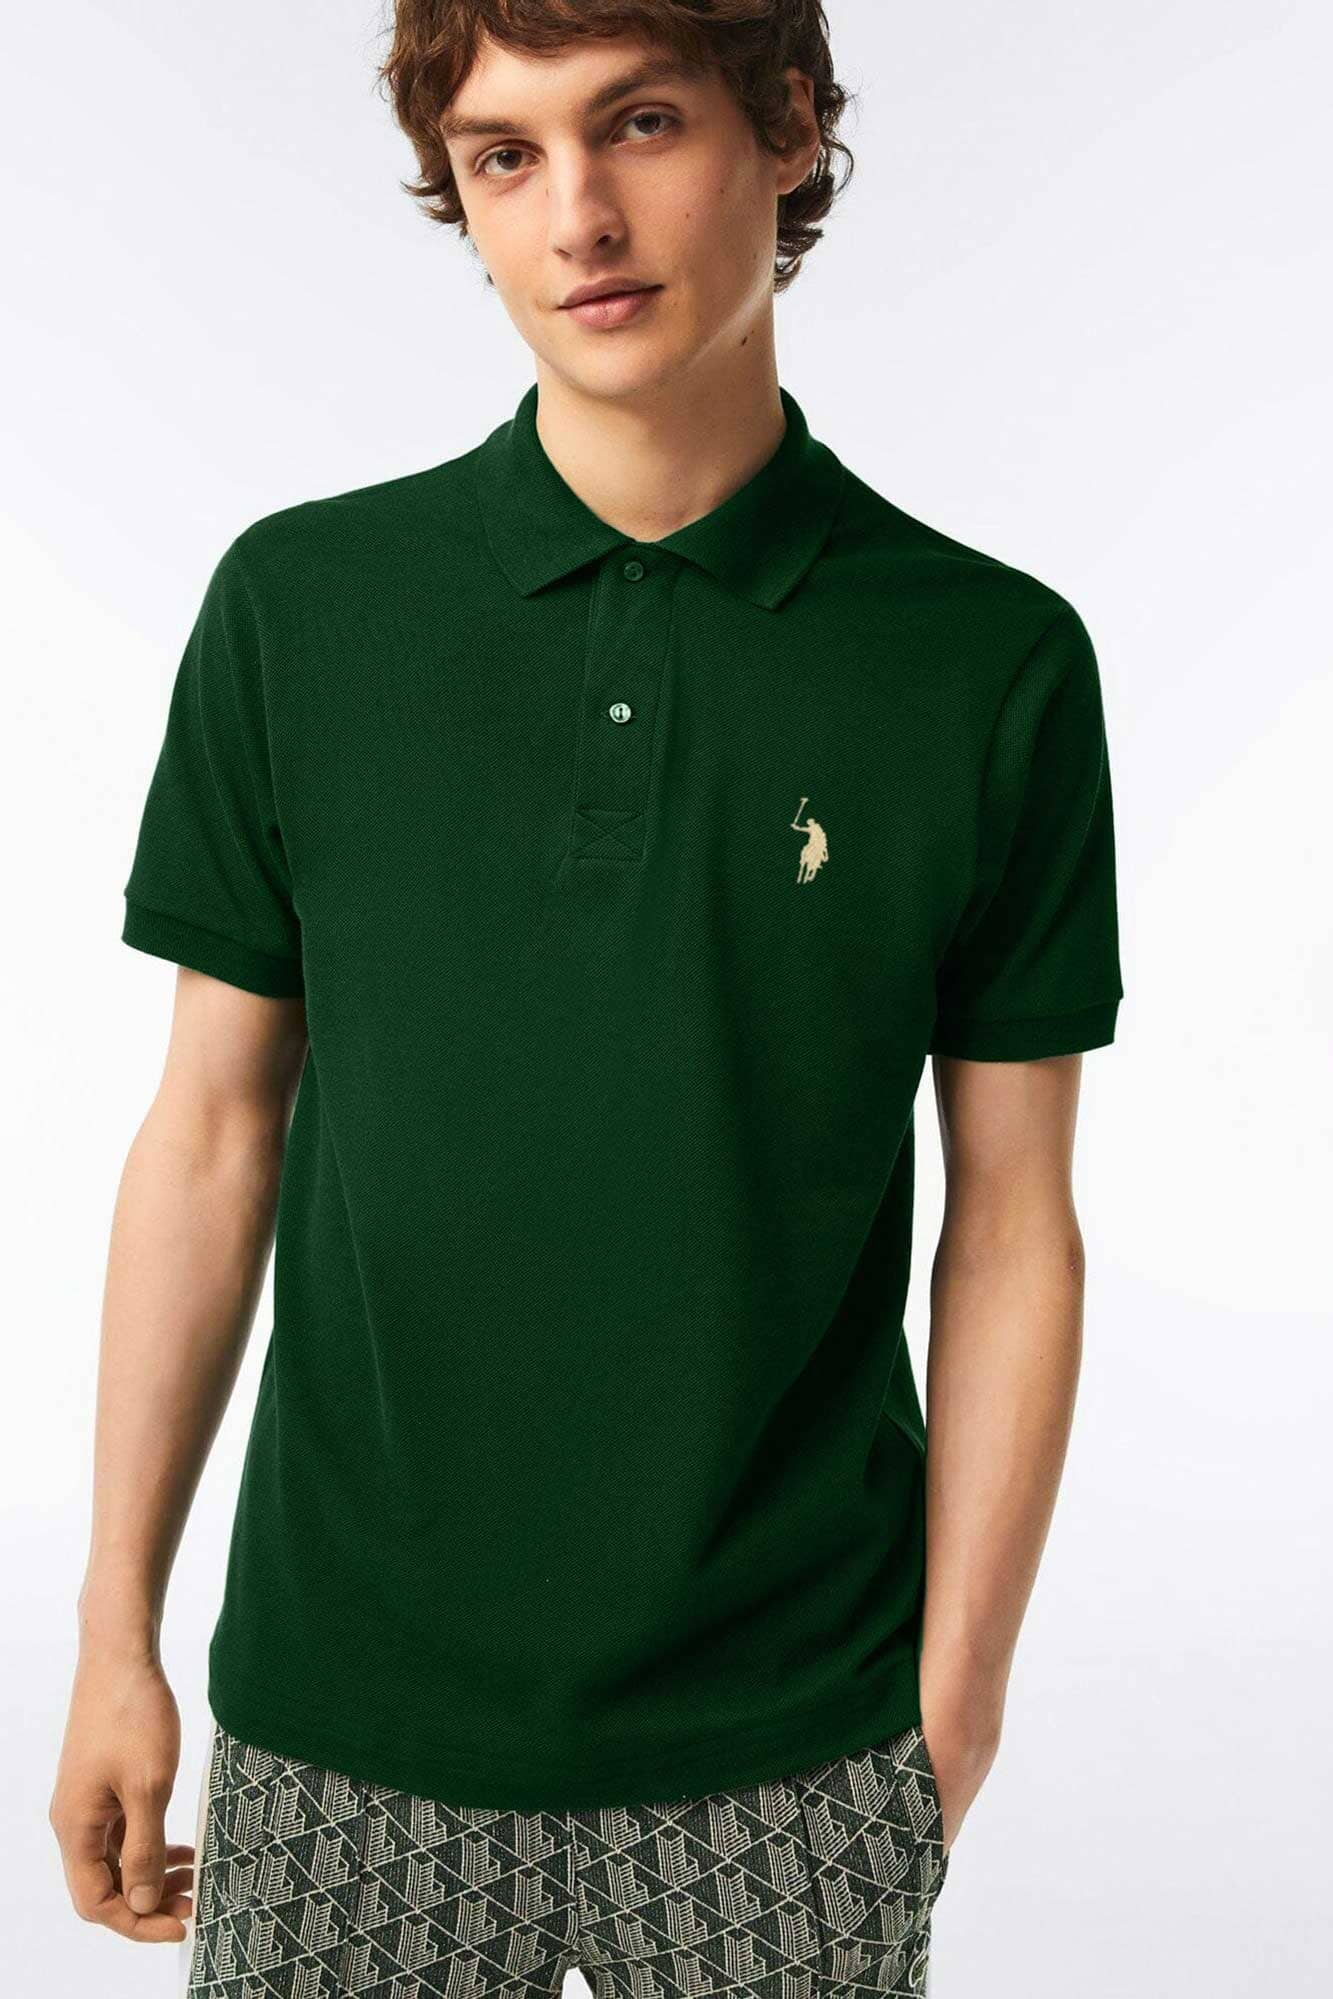 Polo Republica Men's Signature Pony Embroidered Short Sleeve Polo Shirt Men's Polo Shirt Polo Republica Bottle Green S 